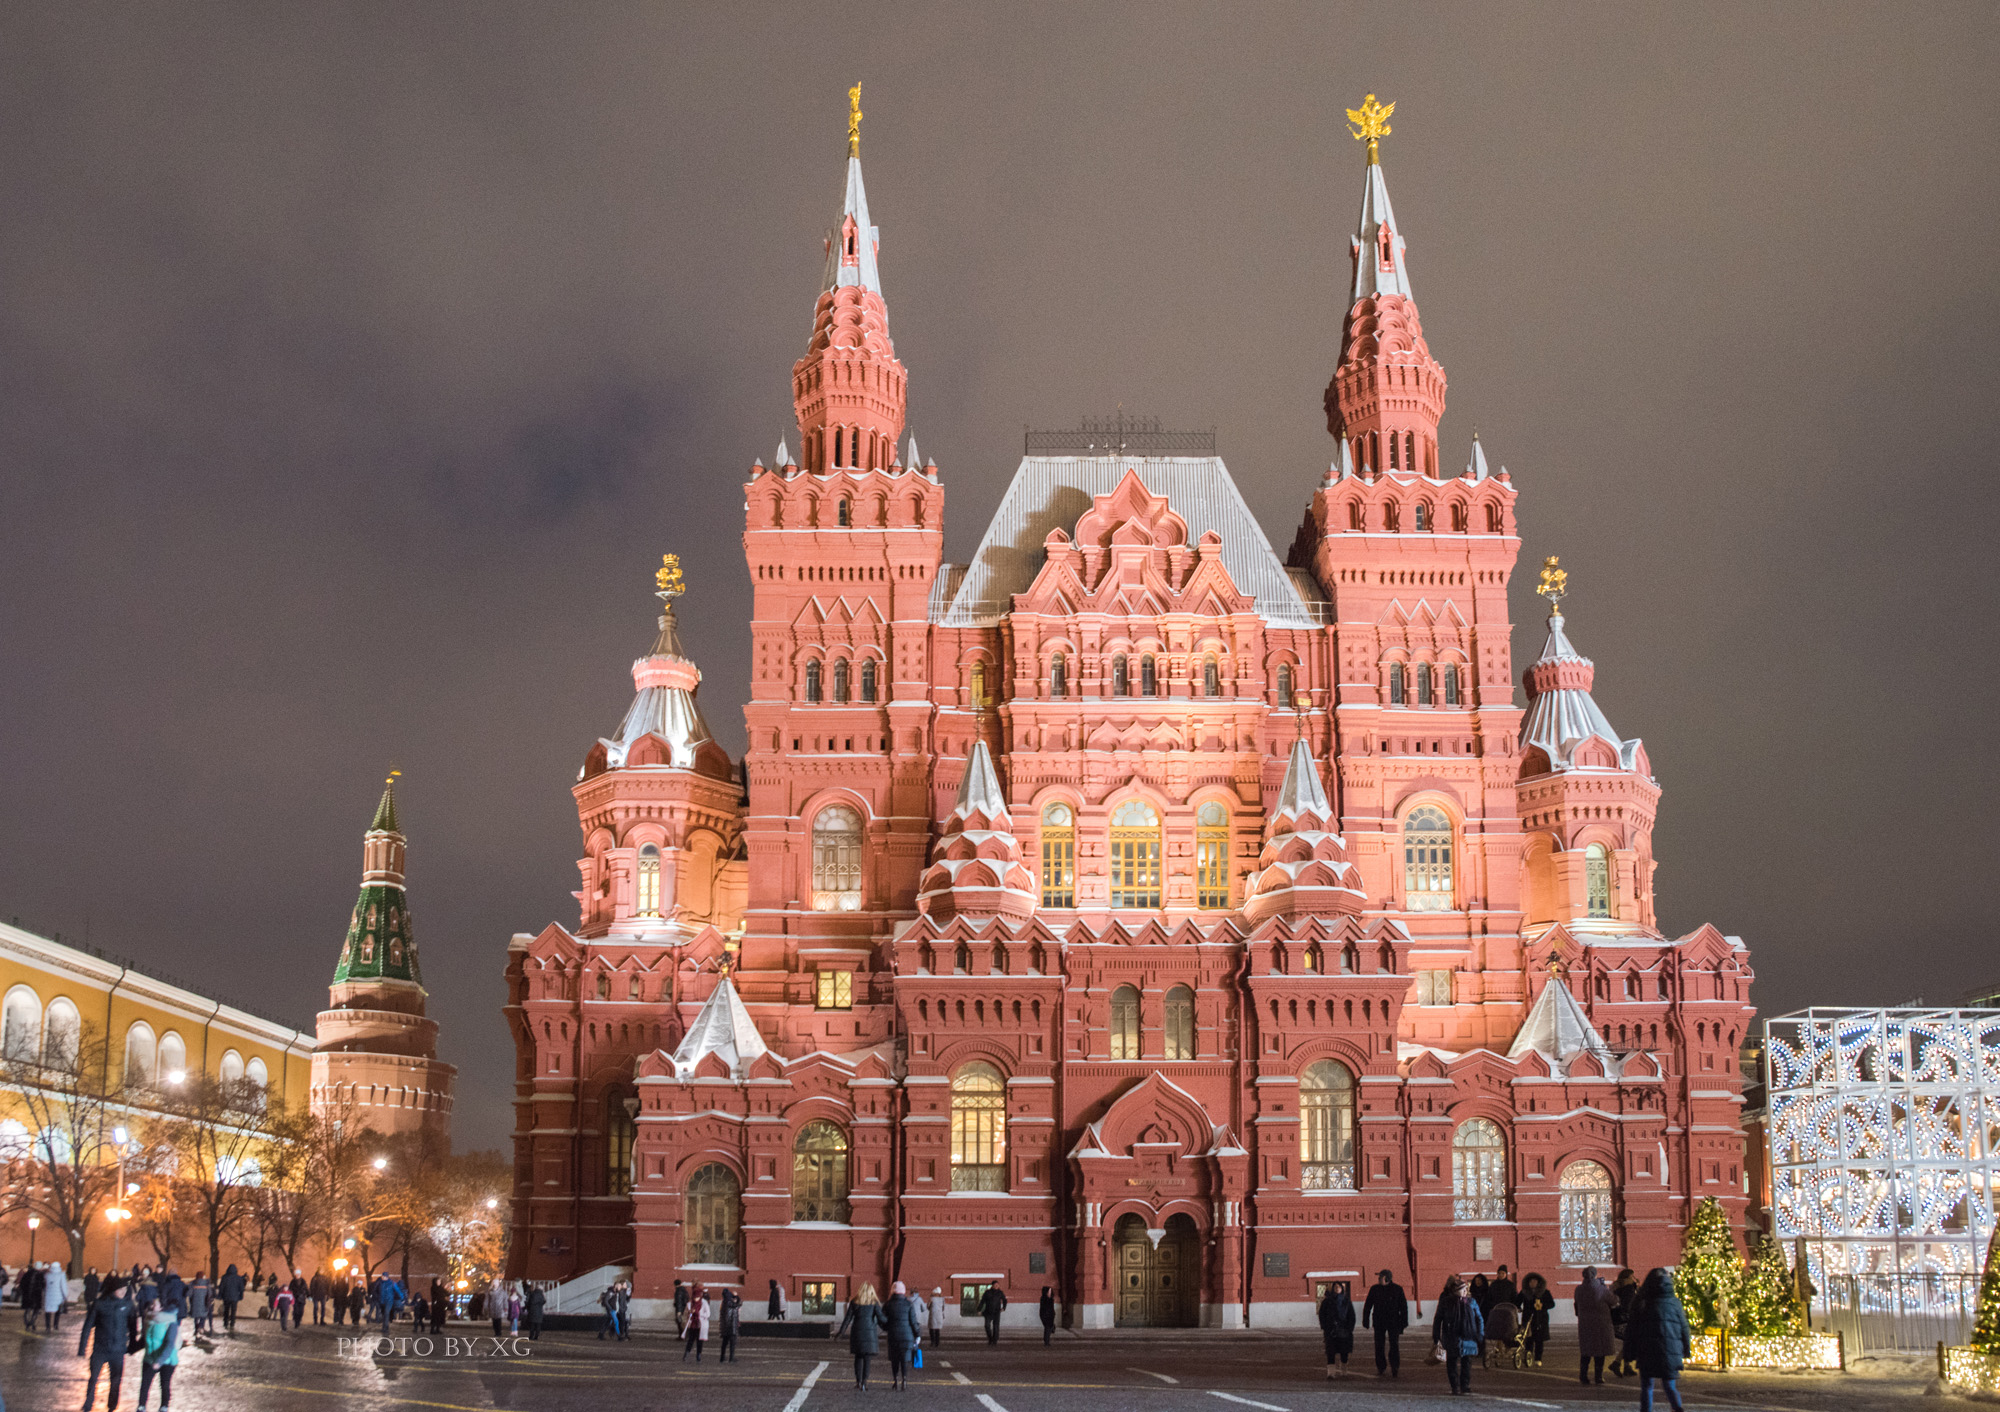 原创它是俄罗斯的标志是莫斯科的中心是每一个游人都会打卡的地方